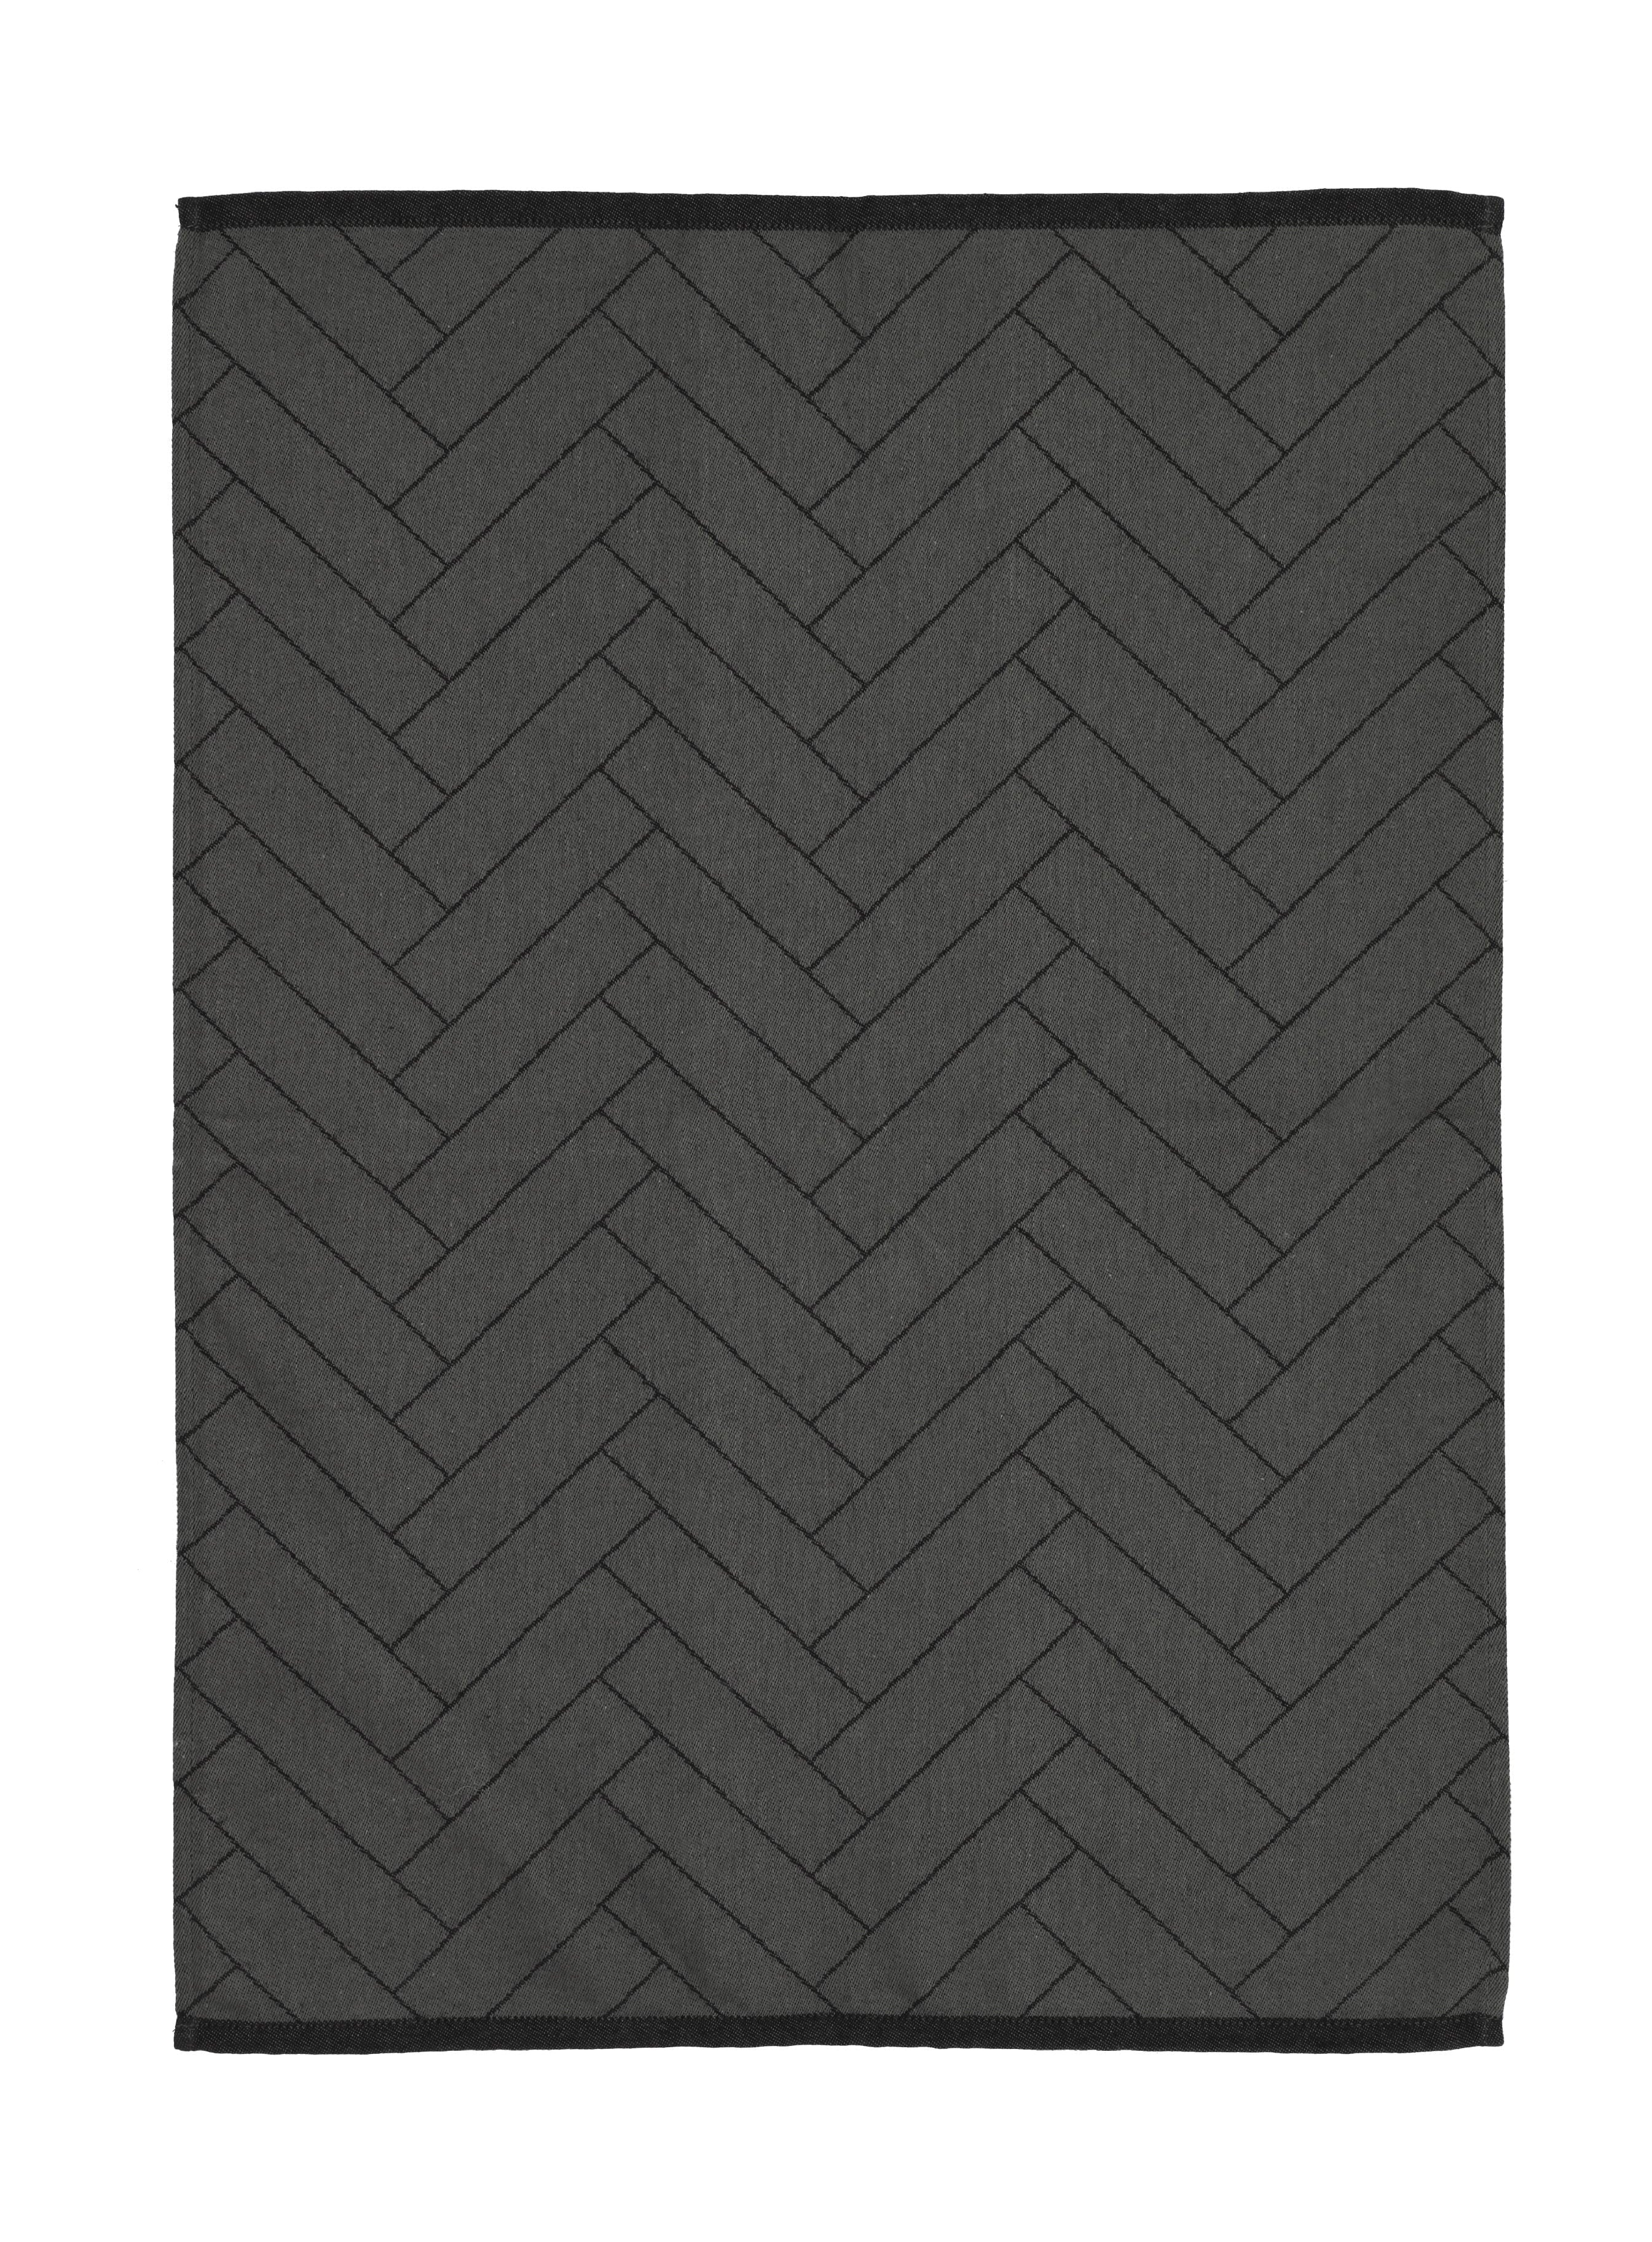 Södahl Tiles pro čajový ručník 50x70 cm, černá